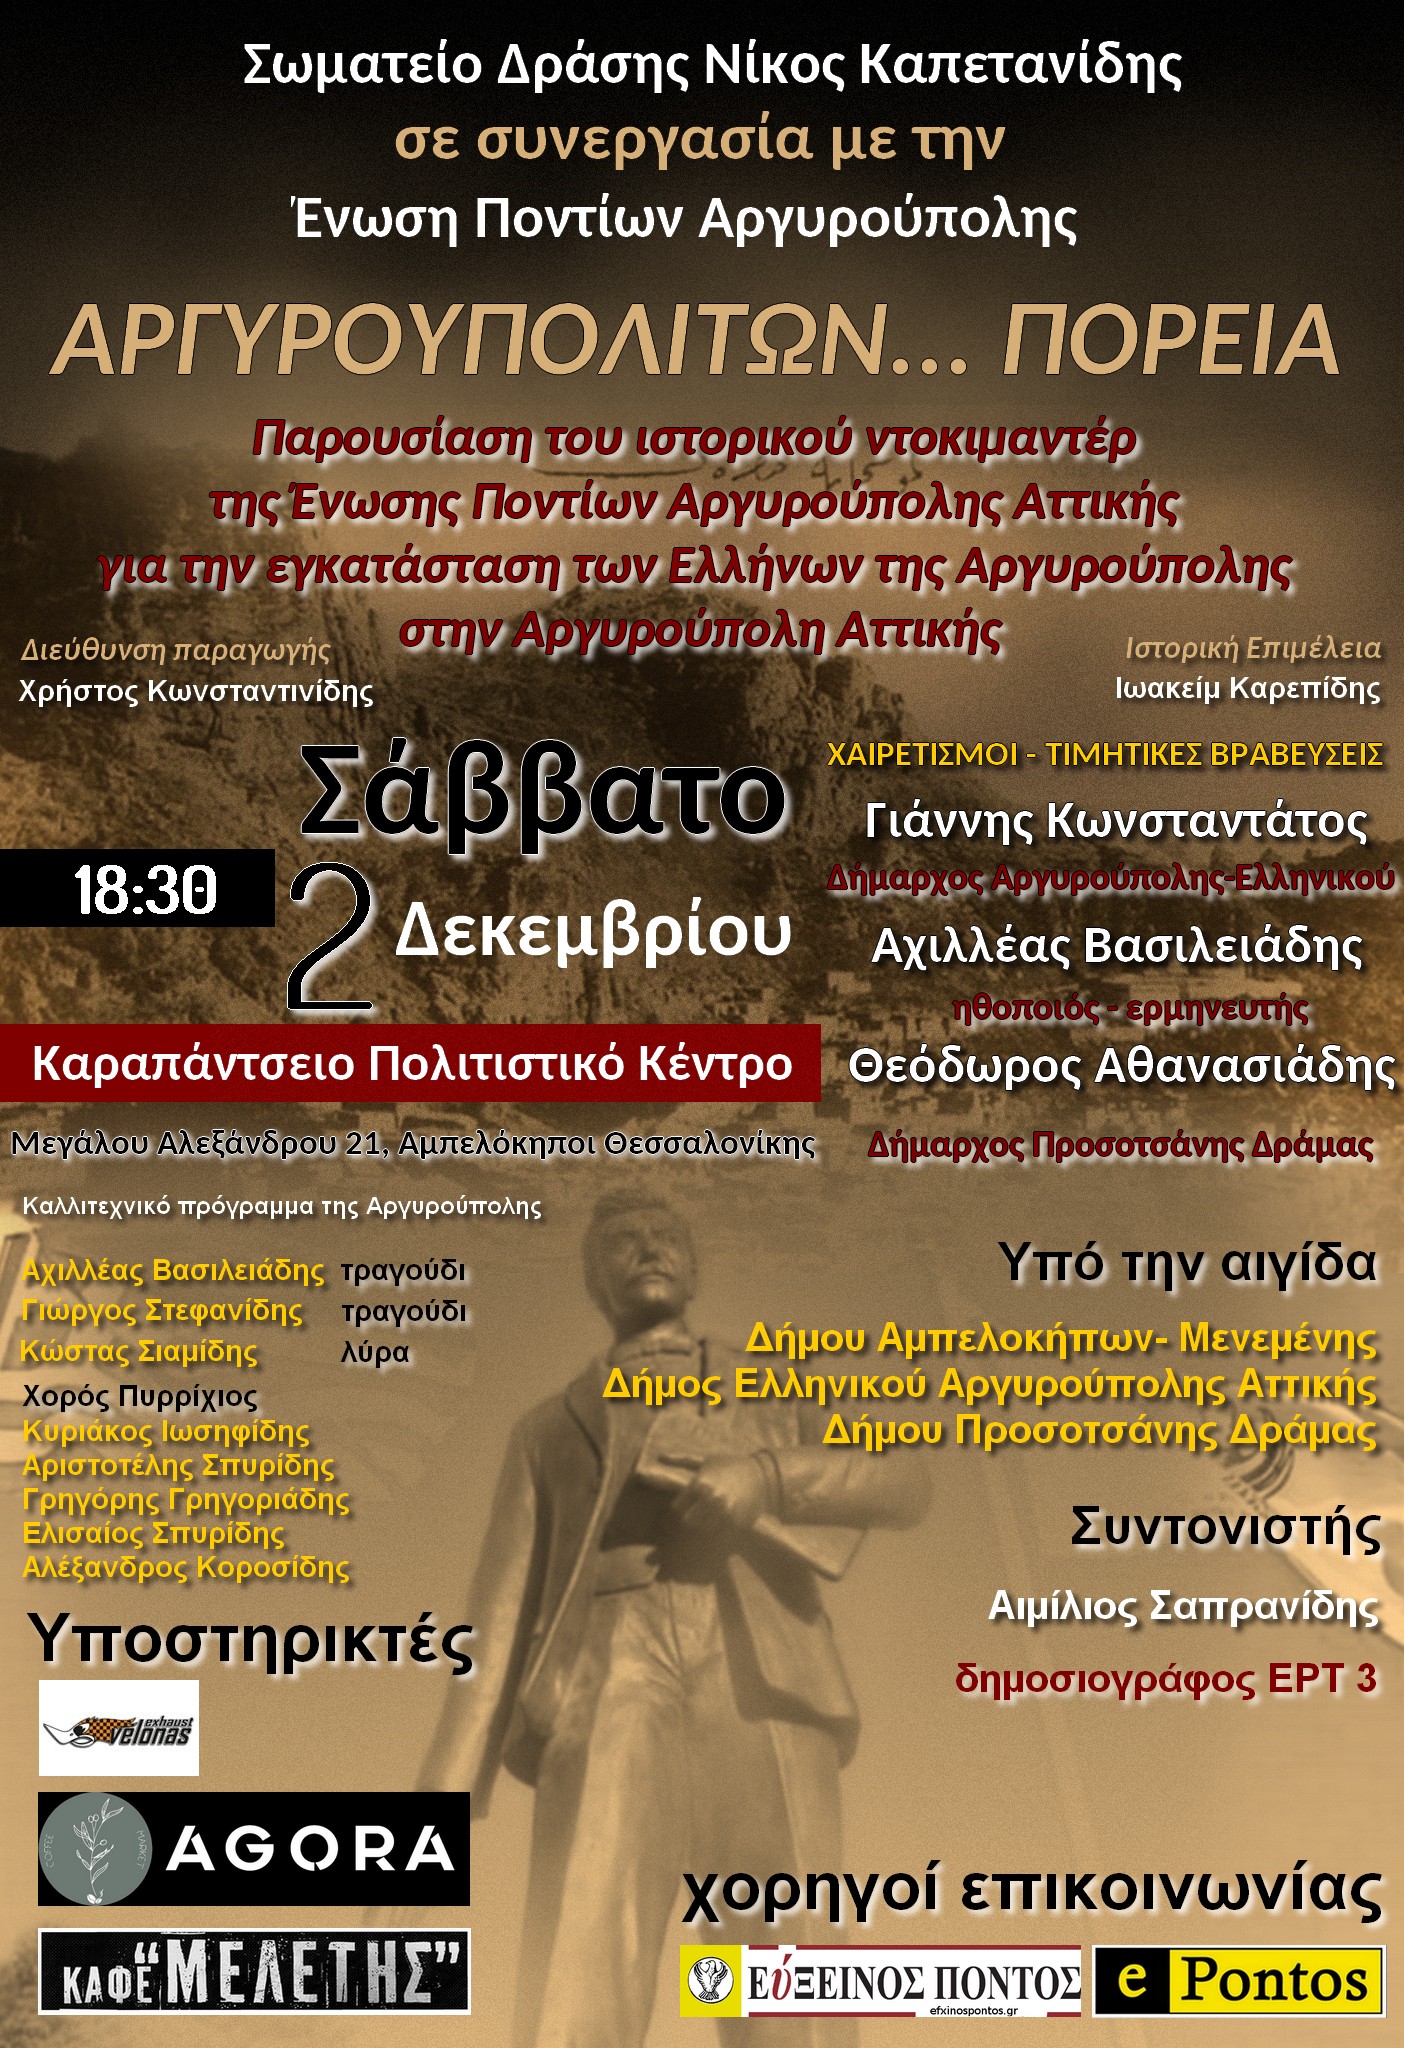 Το ντοκιμαντέρ “Αργυρουπολιτών… Πορεία” θα προβληθεί στις 2 Δεκεμβρίου στη Θεσσαλονίκη